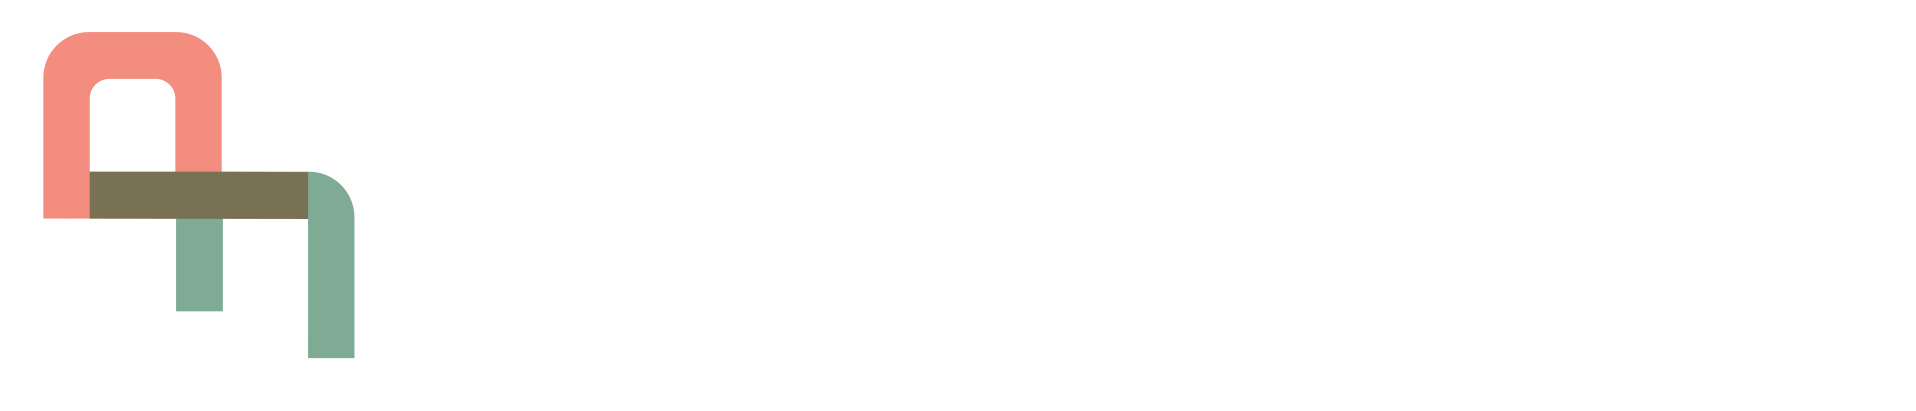 Public Face Website Management